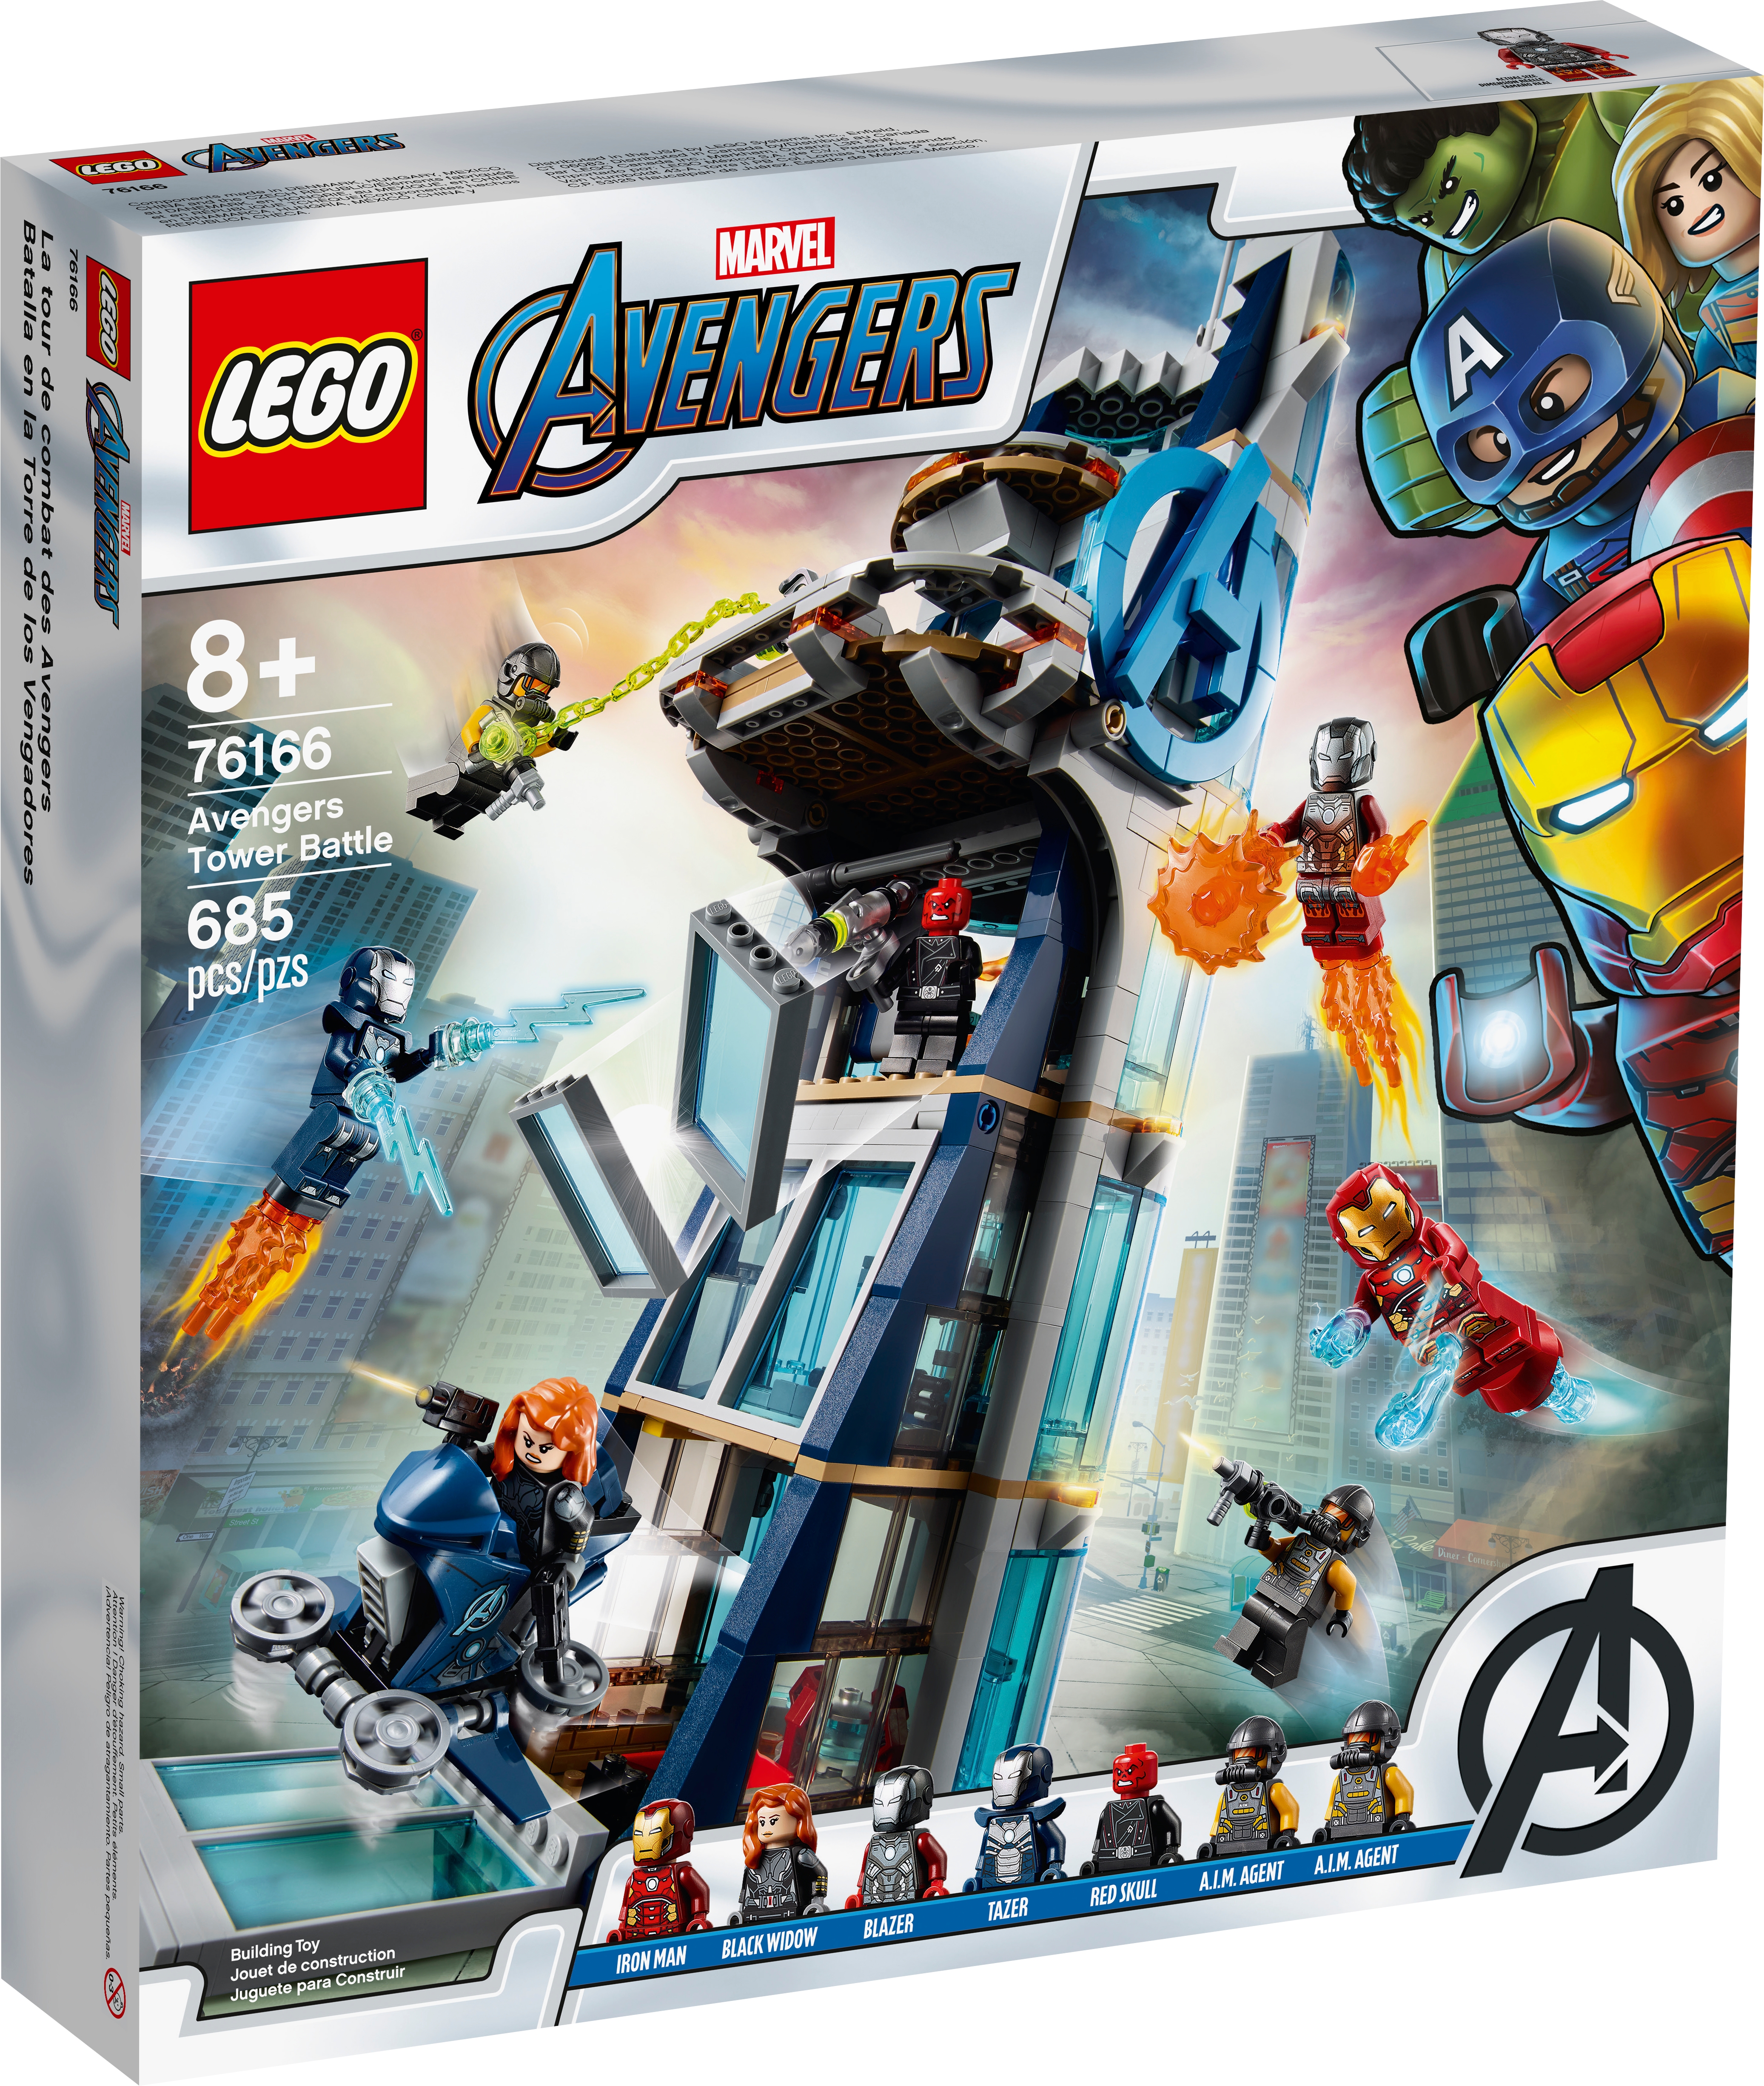 Avengers Tower Battle 76166, Marvel